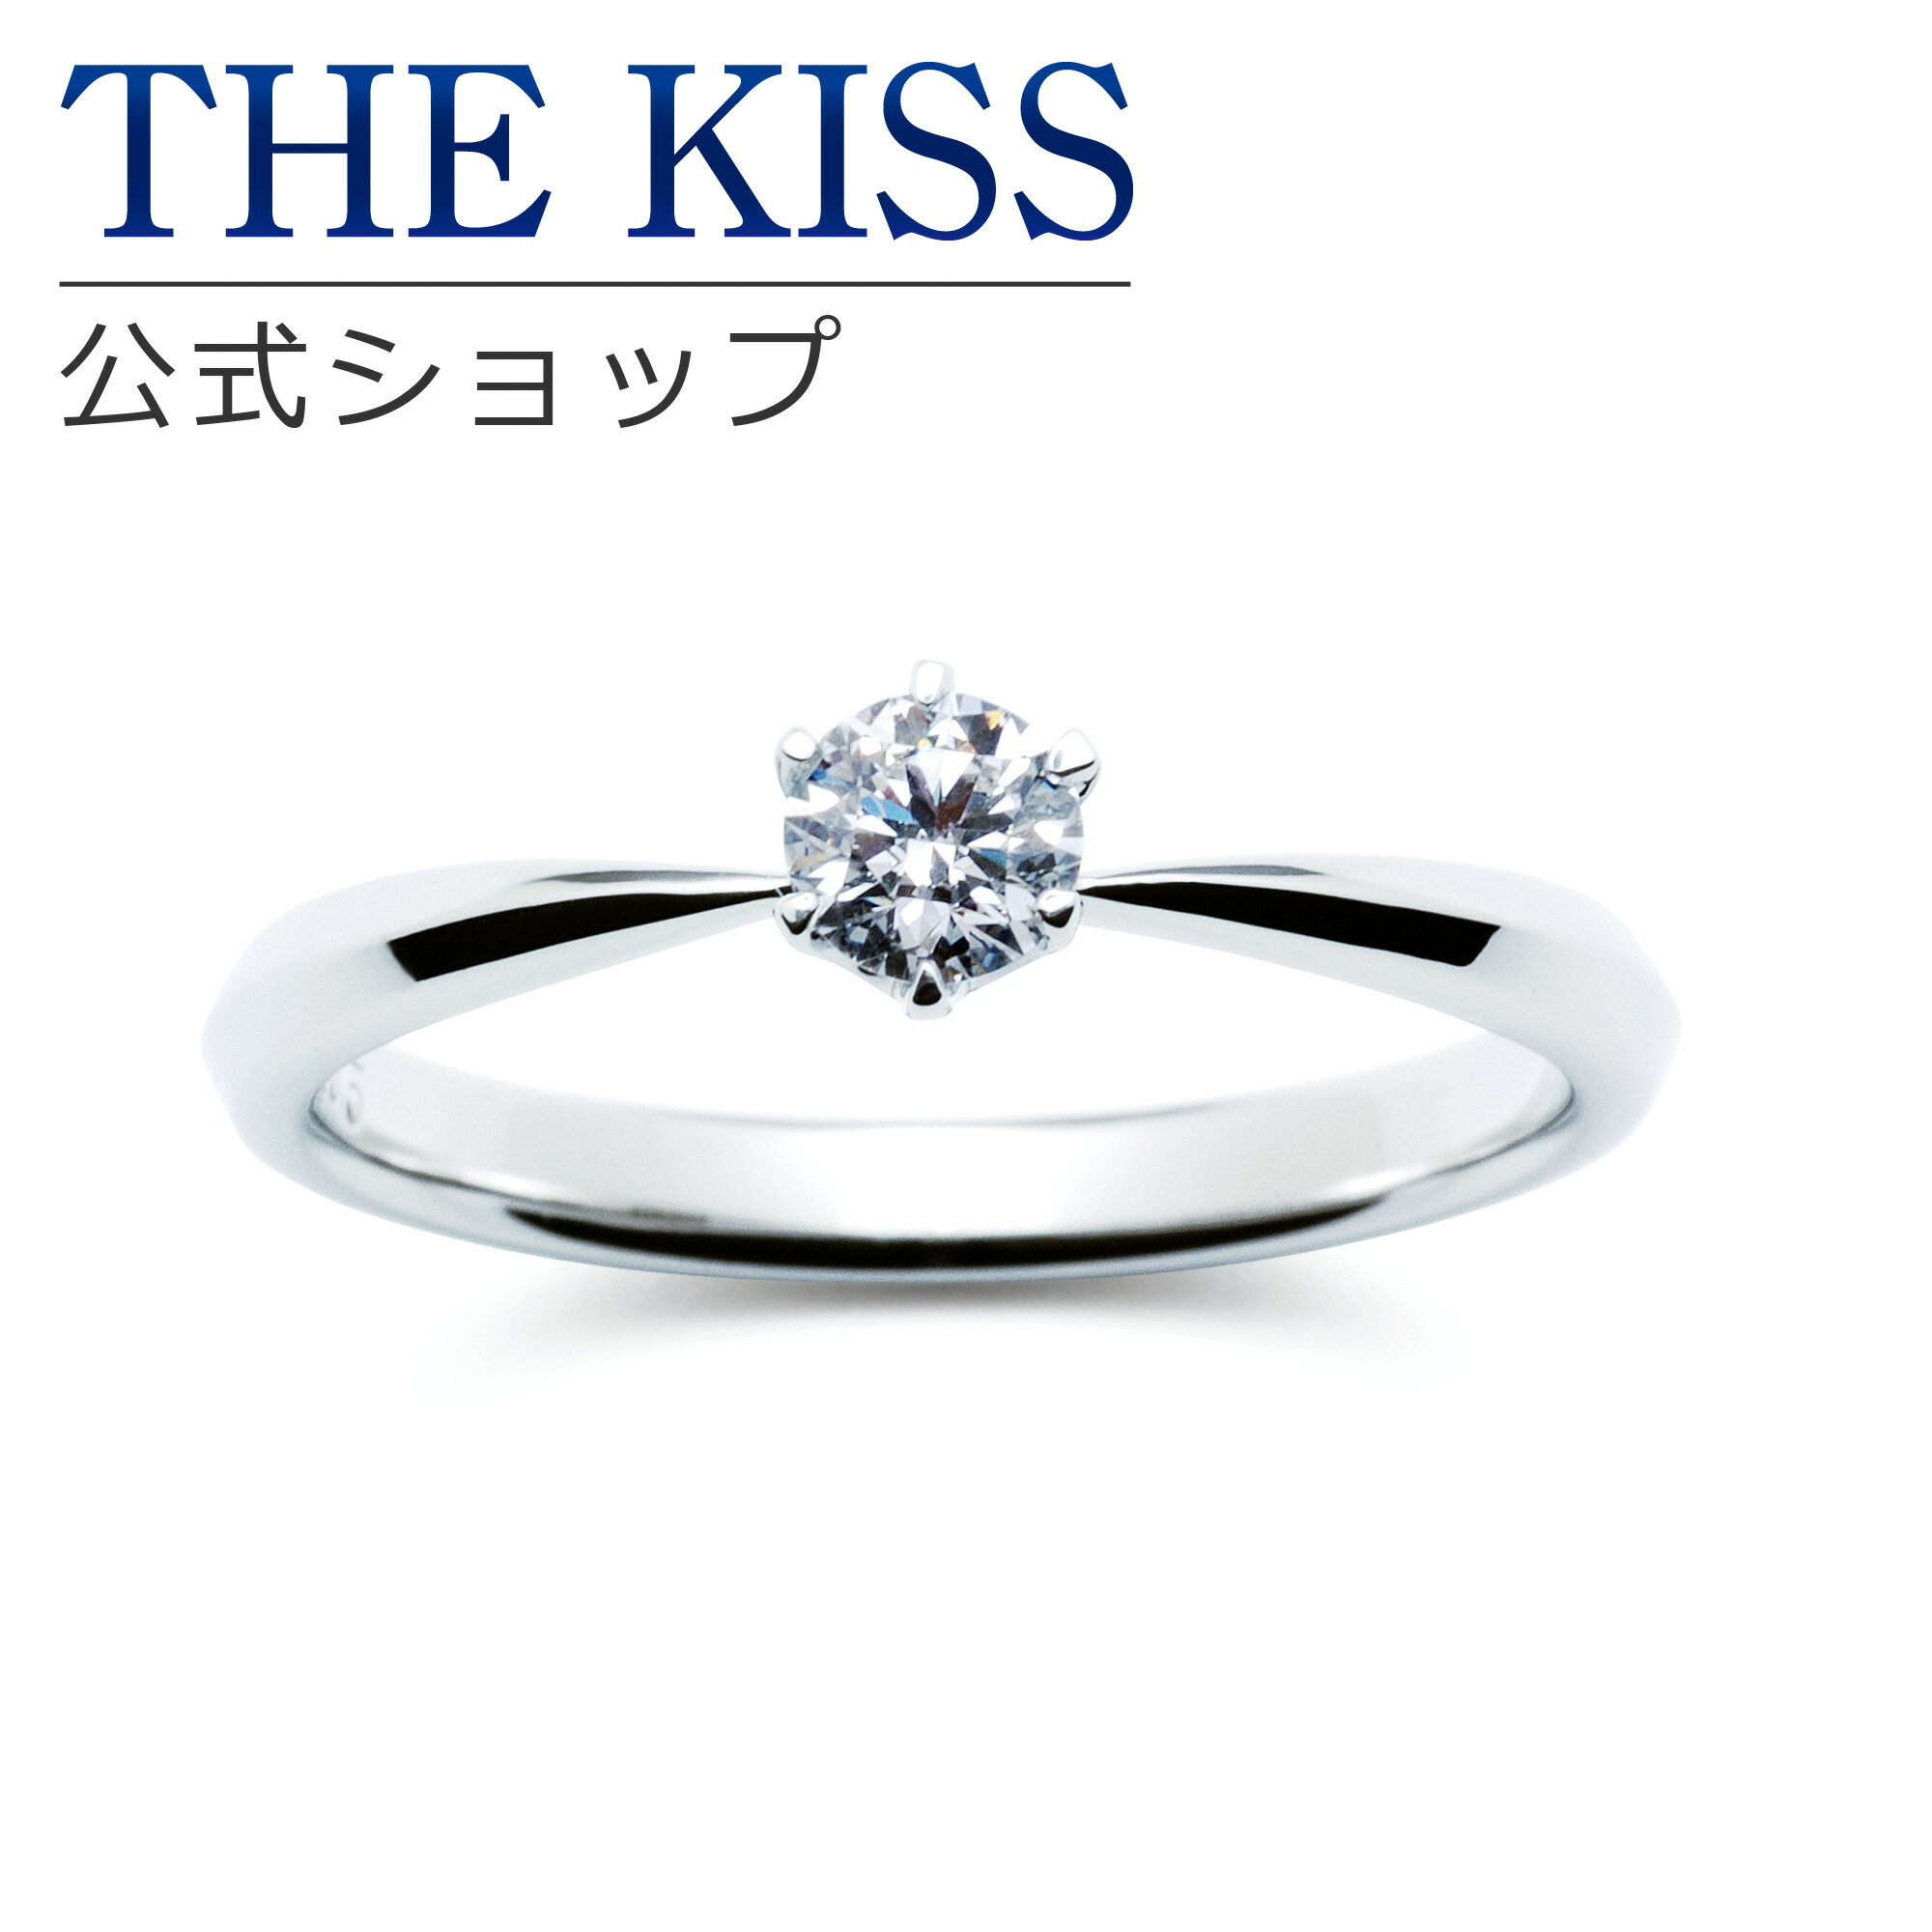 【ラッピング無料】【刻印無料】【THE KISS Anniversary】THE KISS 公式ショップ プラチナ エンゲージリング 婚約指輪 結婚指輪 ブライダルリング プロポーズ THE KISS ザキッス 指輪 6061101125 シンプル ブライダル 鑑定書付 ダイヤモンド【0.25ct F VS2 EX】